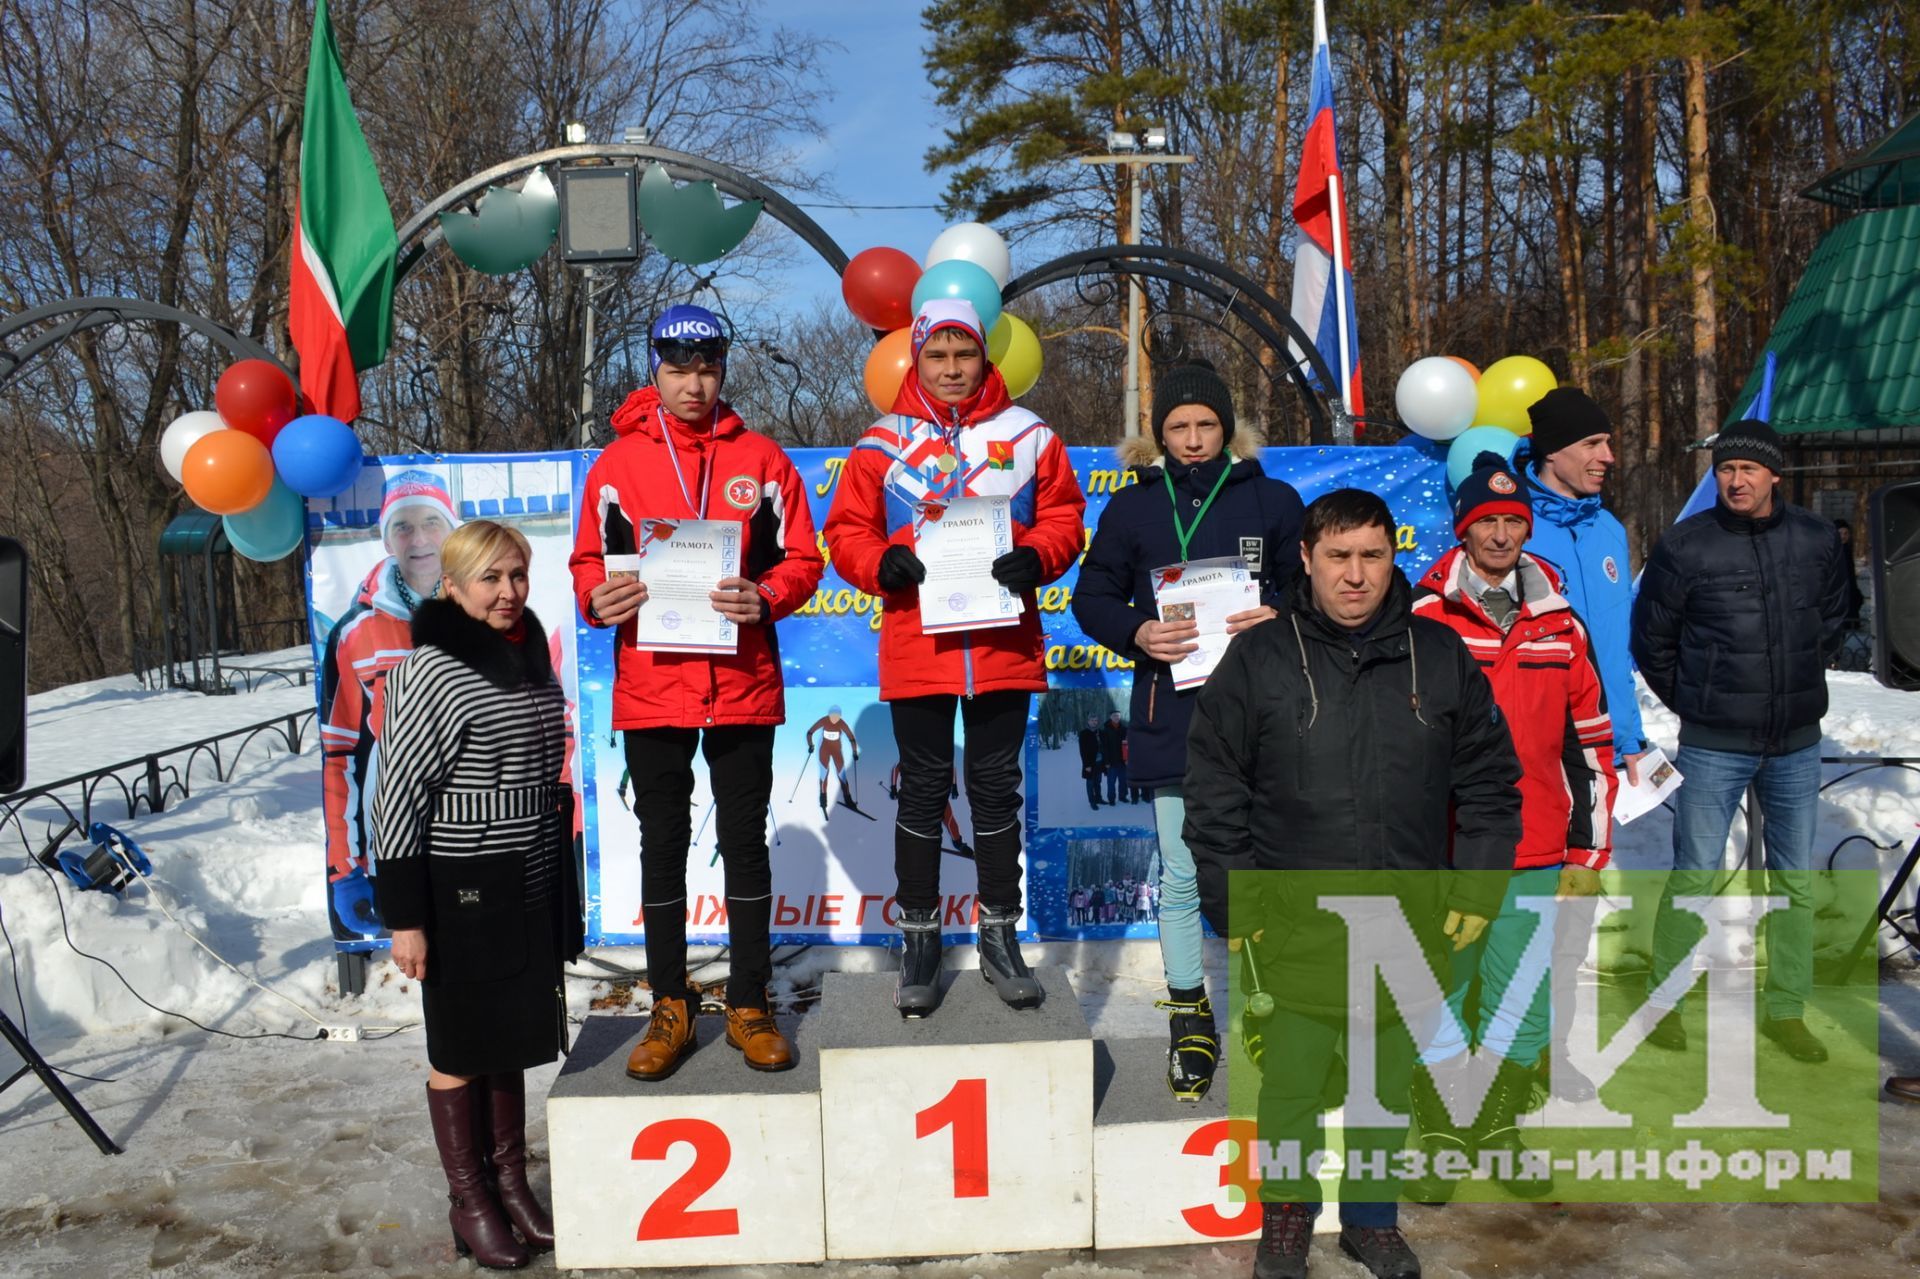 Сармановцы приняли участие в лыжных гонках